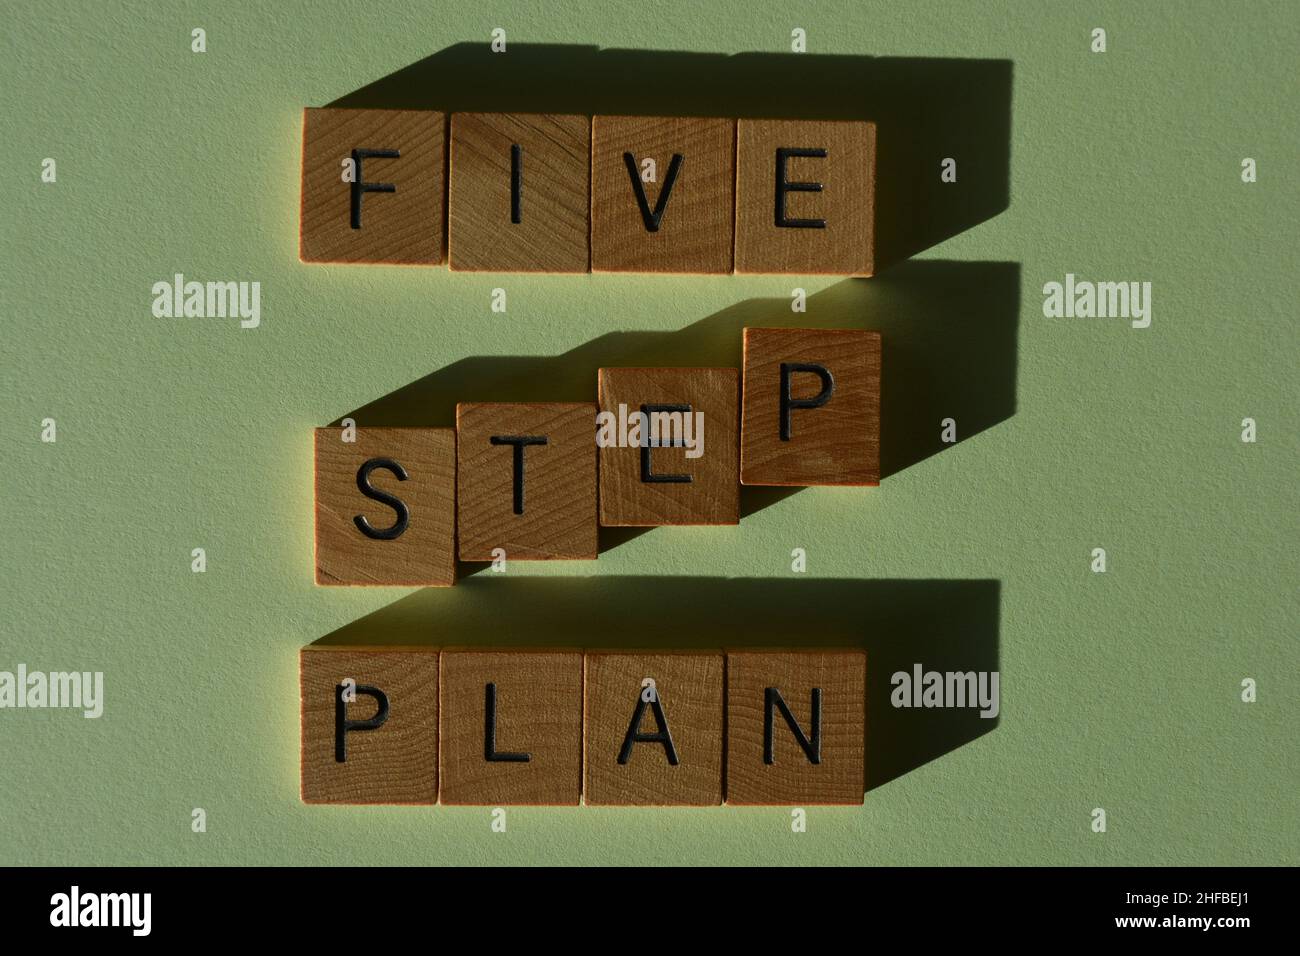 Plan de cinco pasos, palabras en letras del alfabeto de madera aisladas sobre fondo verde Foto de stock